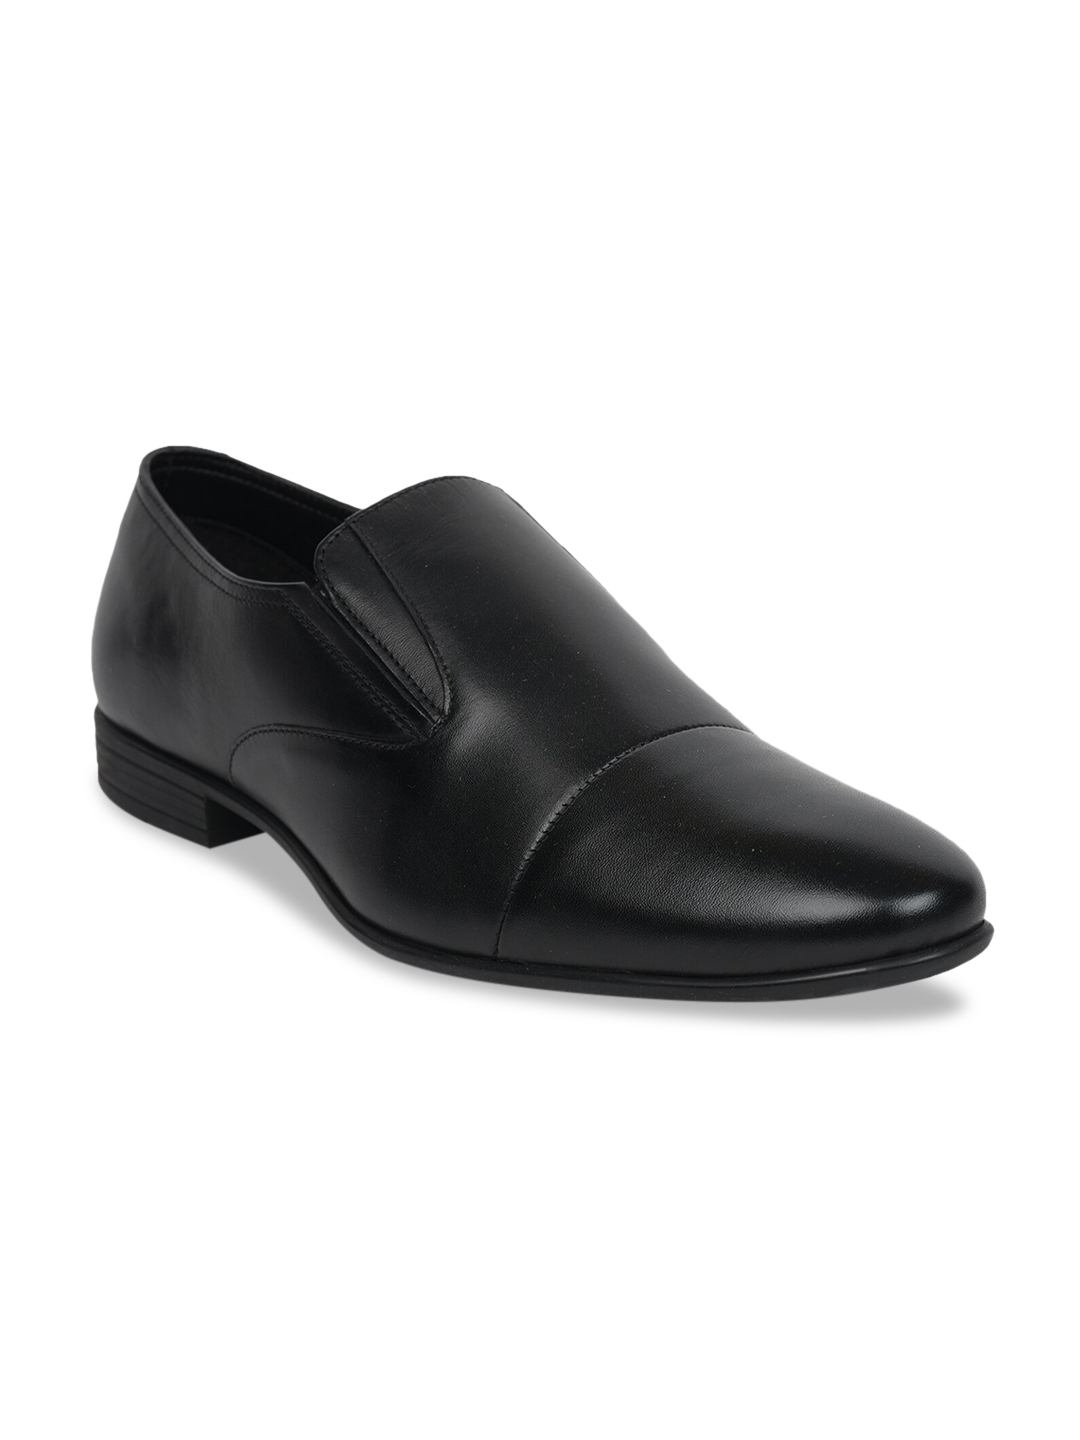 Buy Liberty Men Black Solid Formal Slip On Shoes - Formal Shoes for Men ...